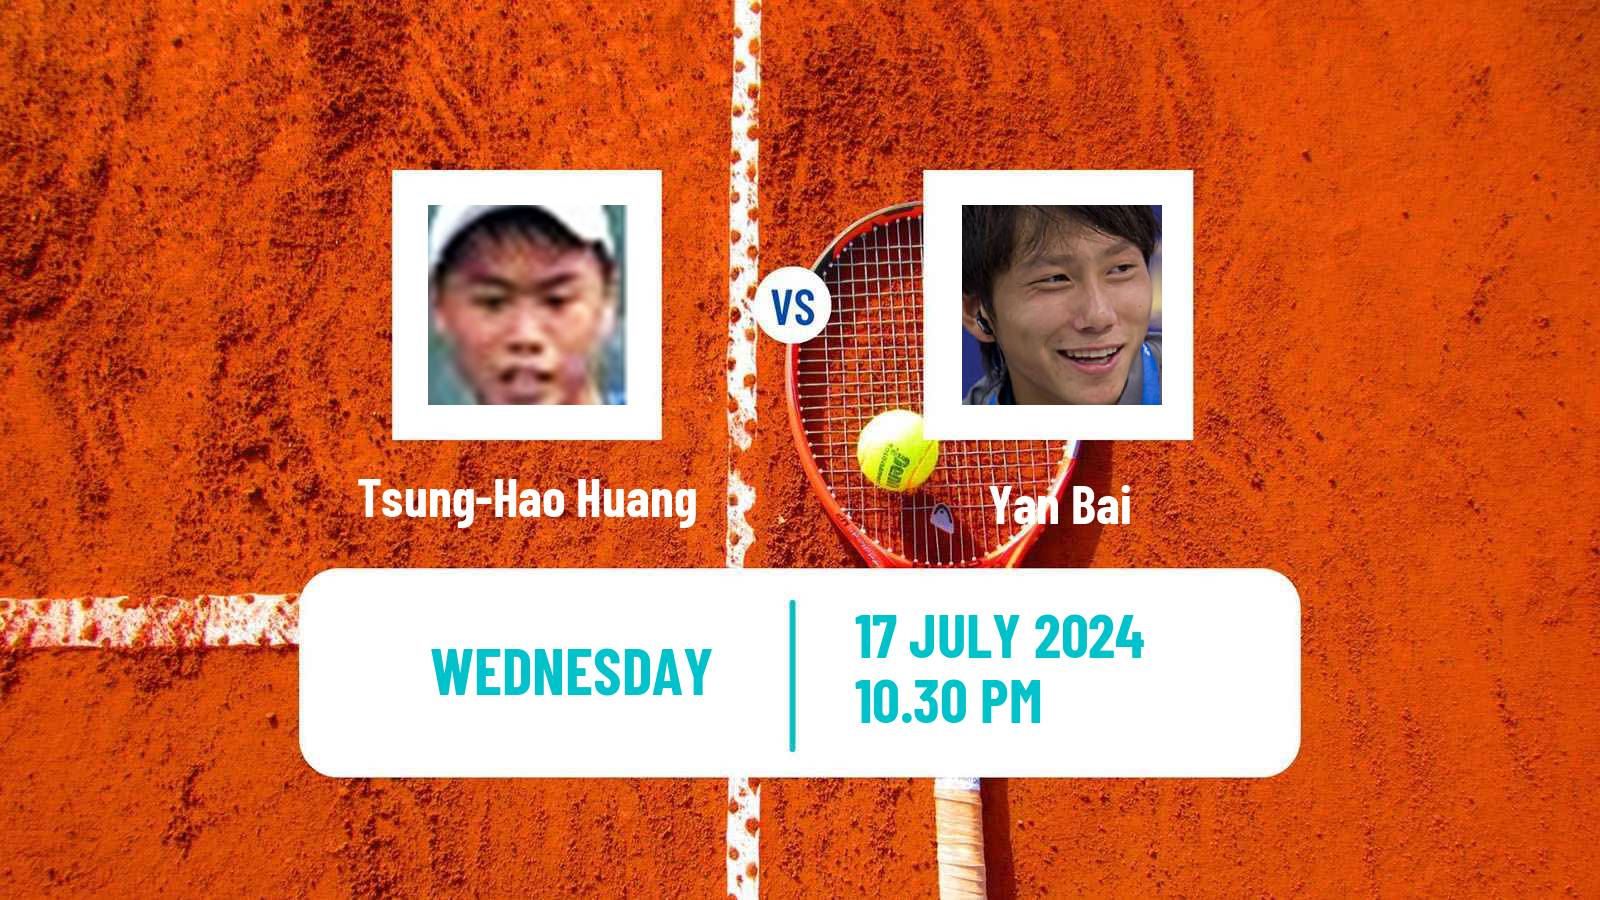 Tennis ITF M25 Tianjin 2 Men Tsung-Hao Huang - Yan Bai